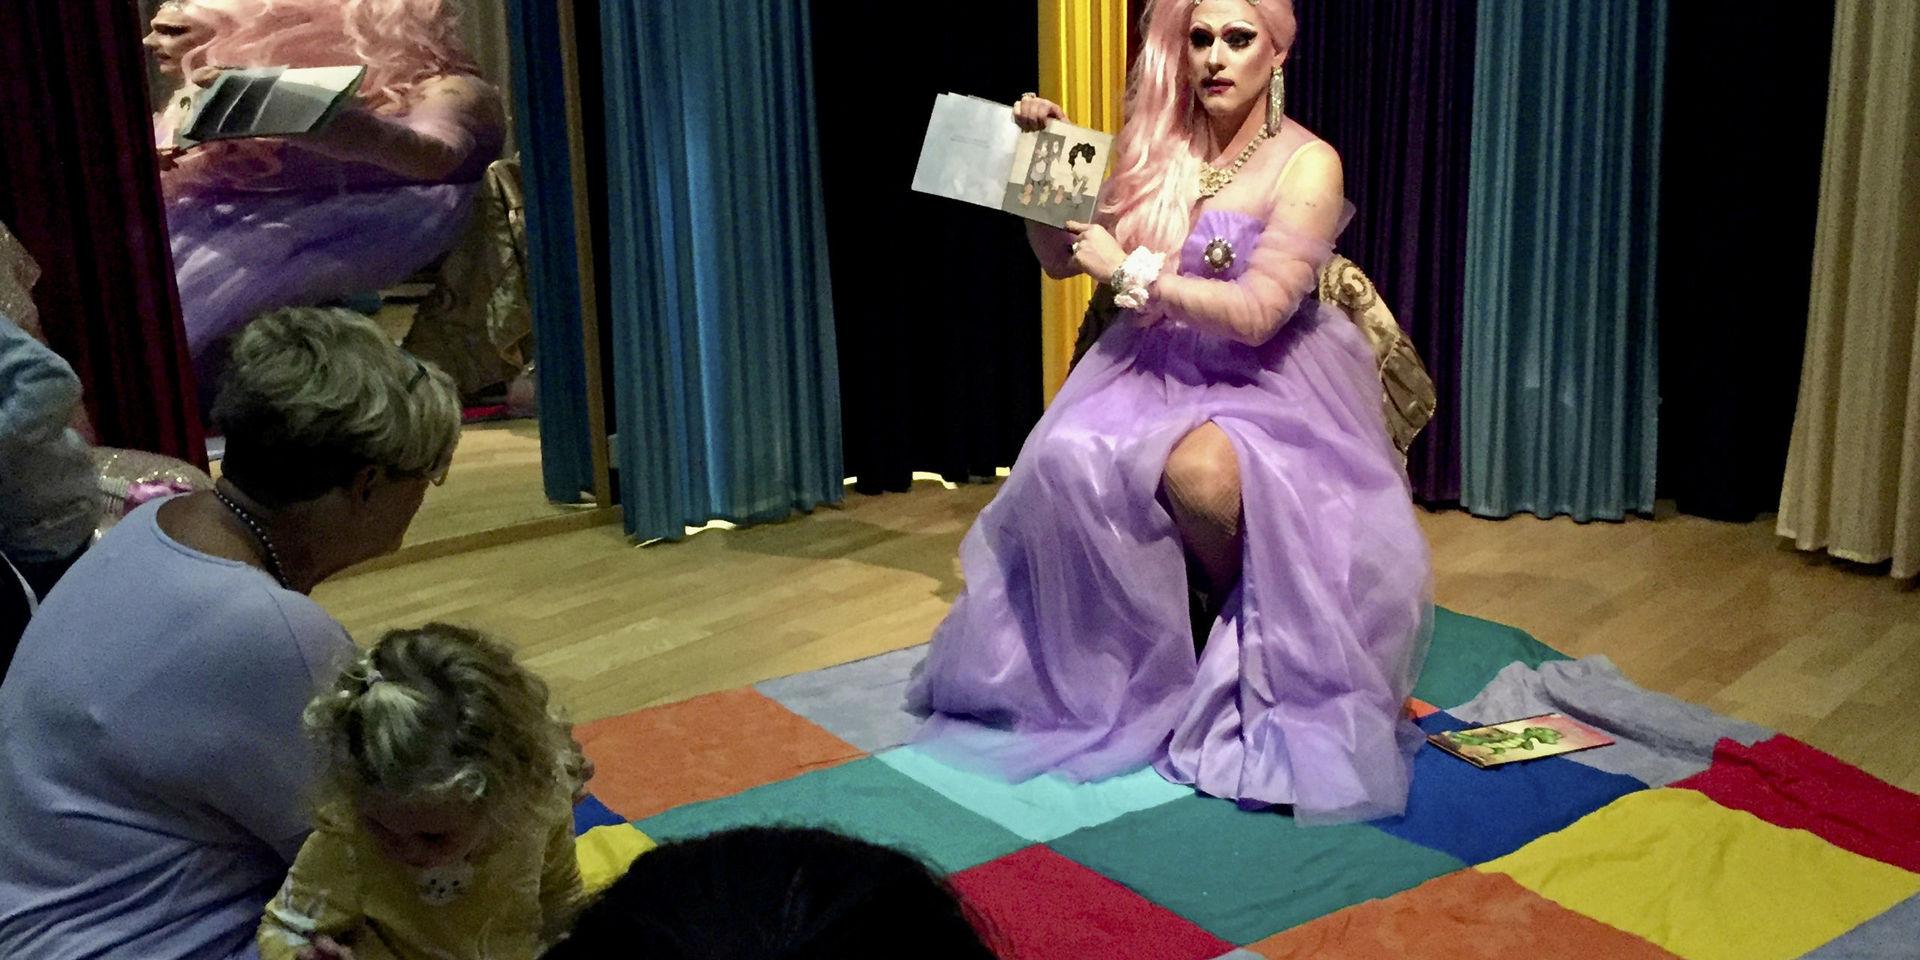 Drag queens som läser sagor för barn, har väckt reaktioner hos insändarskribenten. Bilden är från sagoläsning i Halmstad.